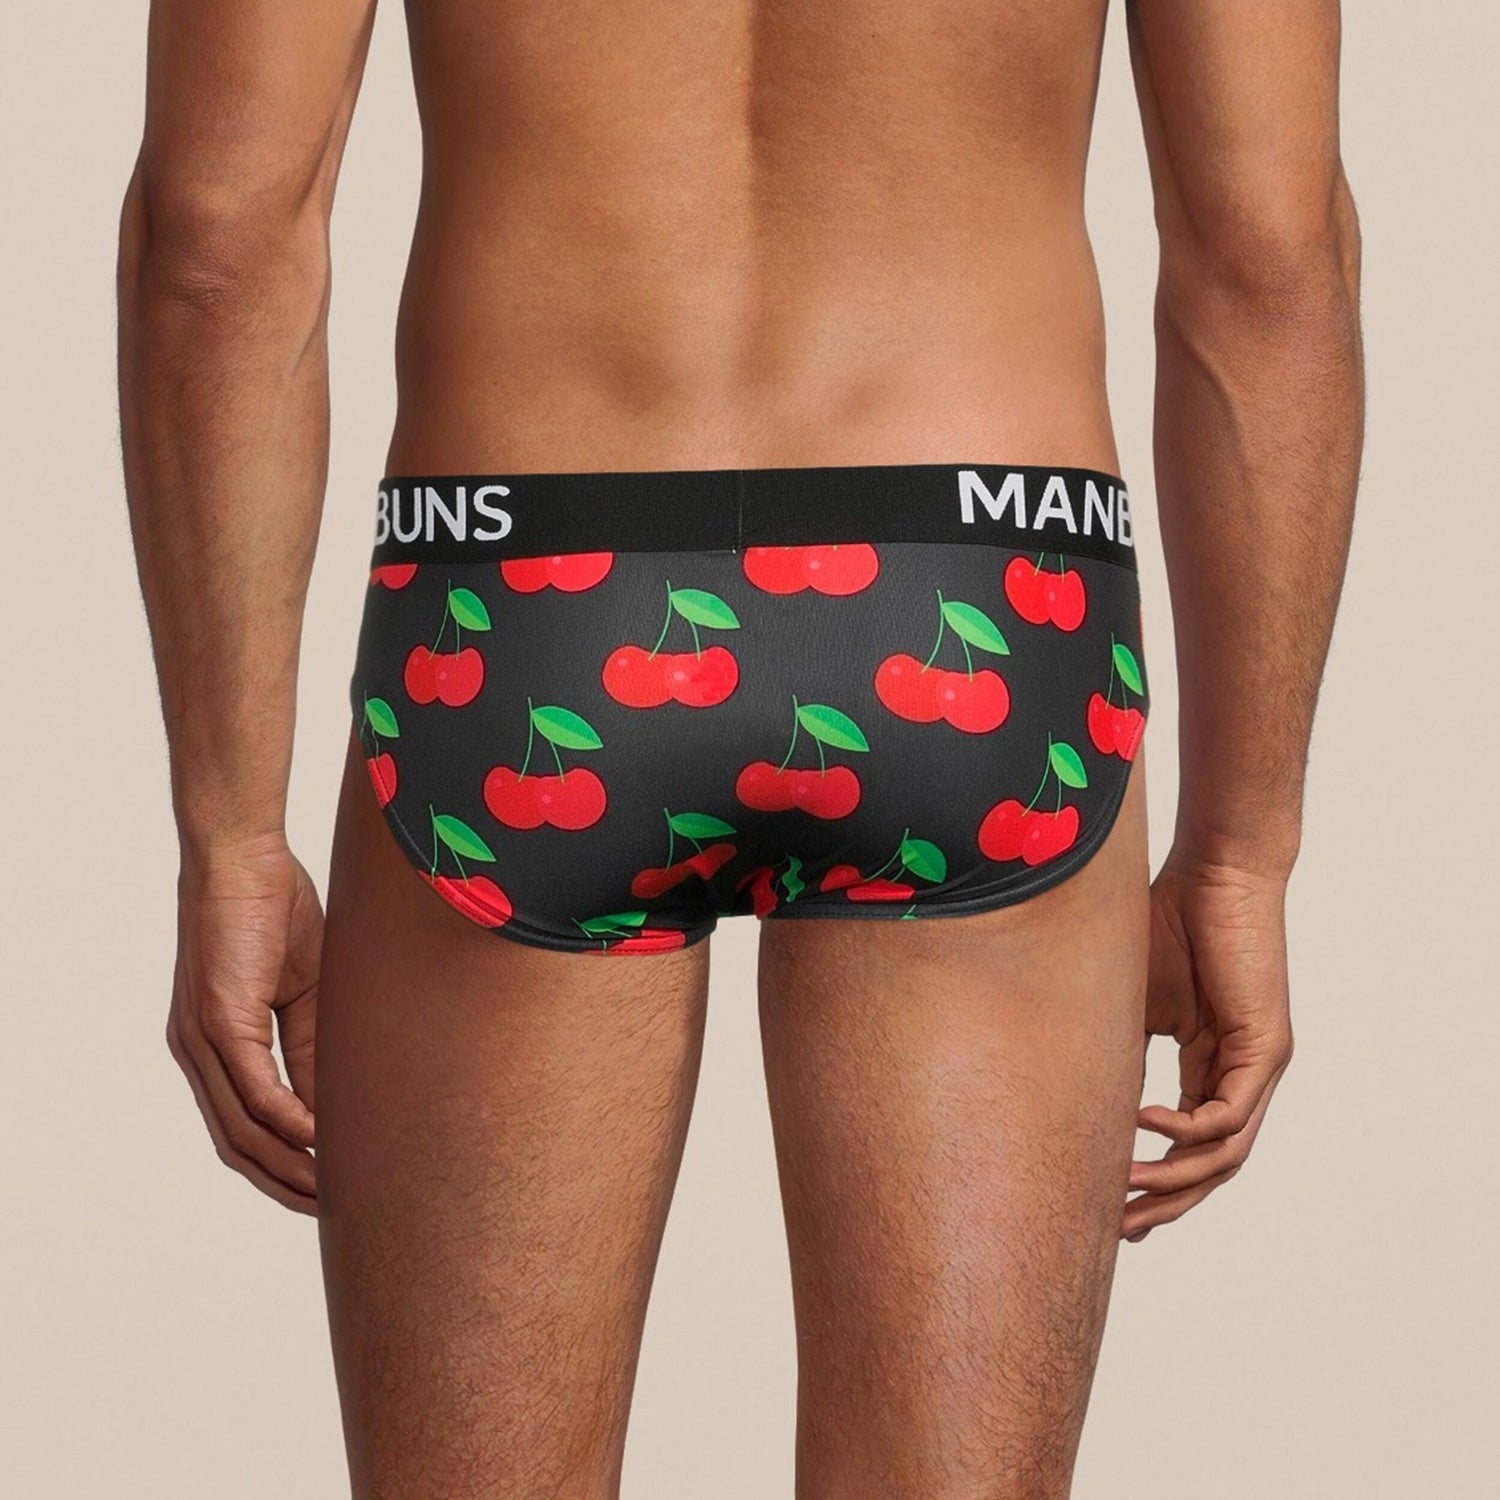 Fun Novelty Cherry Print Briefs Underwear – MANBUNS